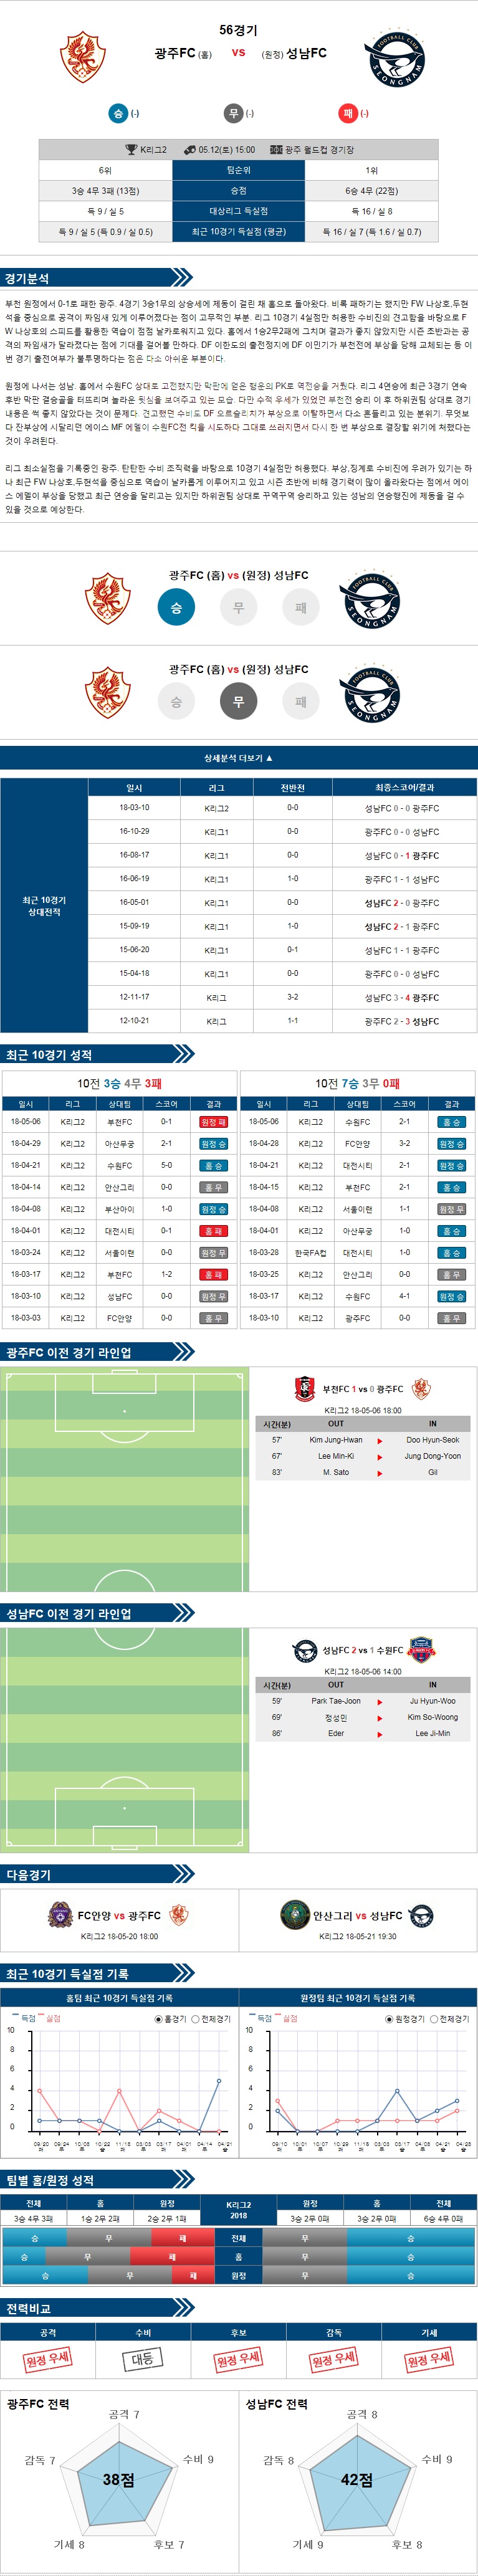 5-12 [K리그챌린지] 15:00 축구분석 광주 vs 성남